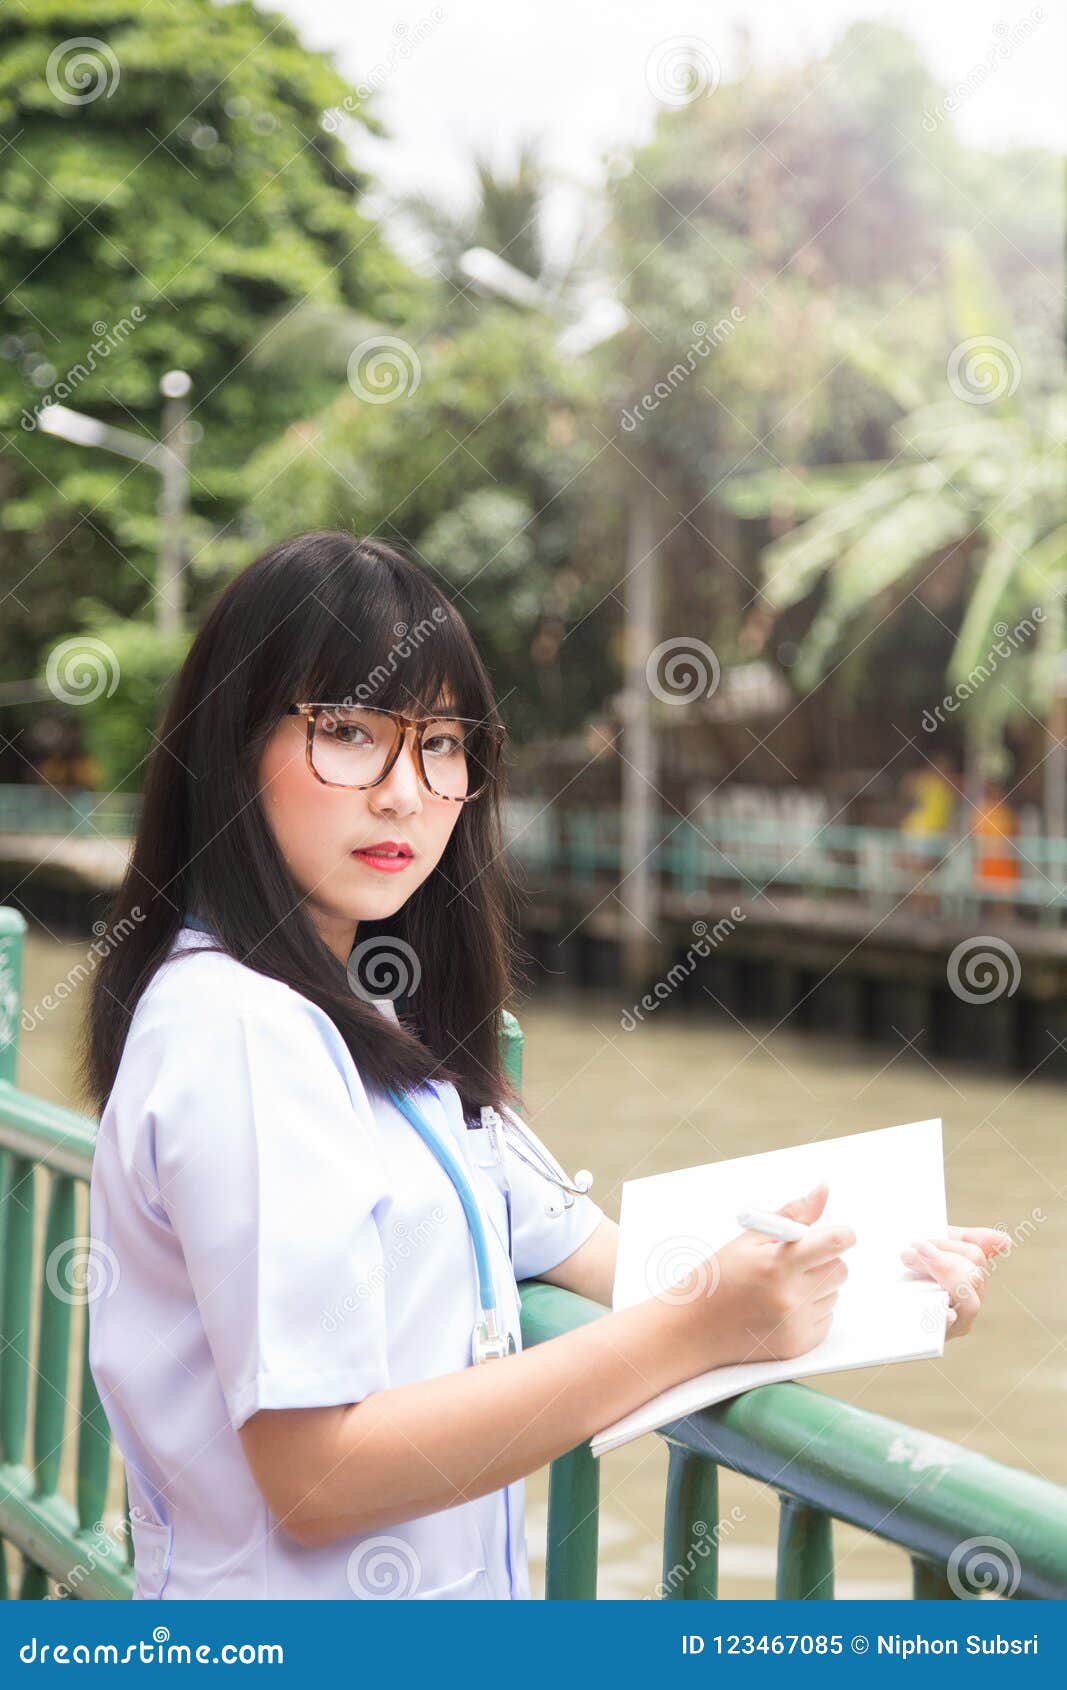 woman asian doctorÃÂ  white shirt suit with stethoscope outdoor h